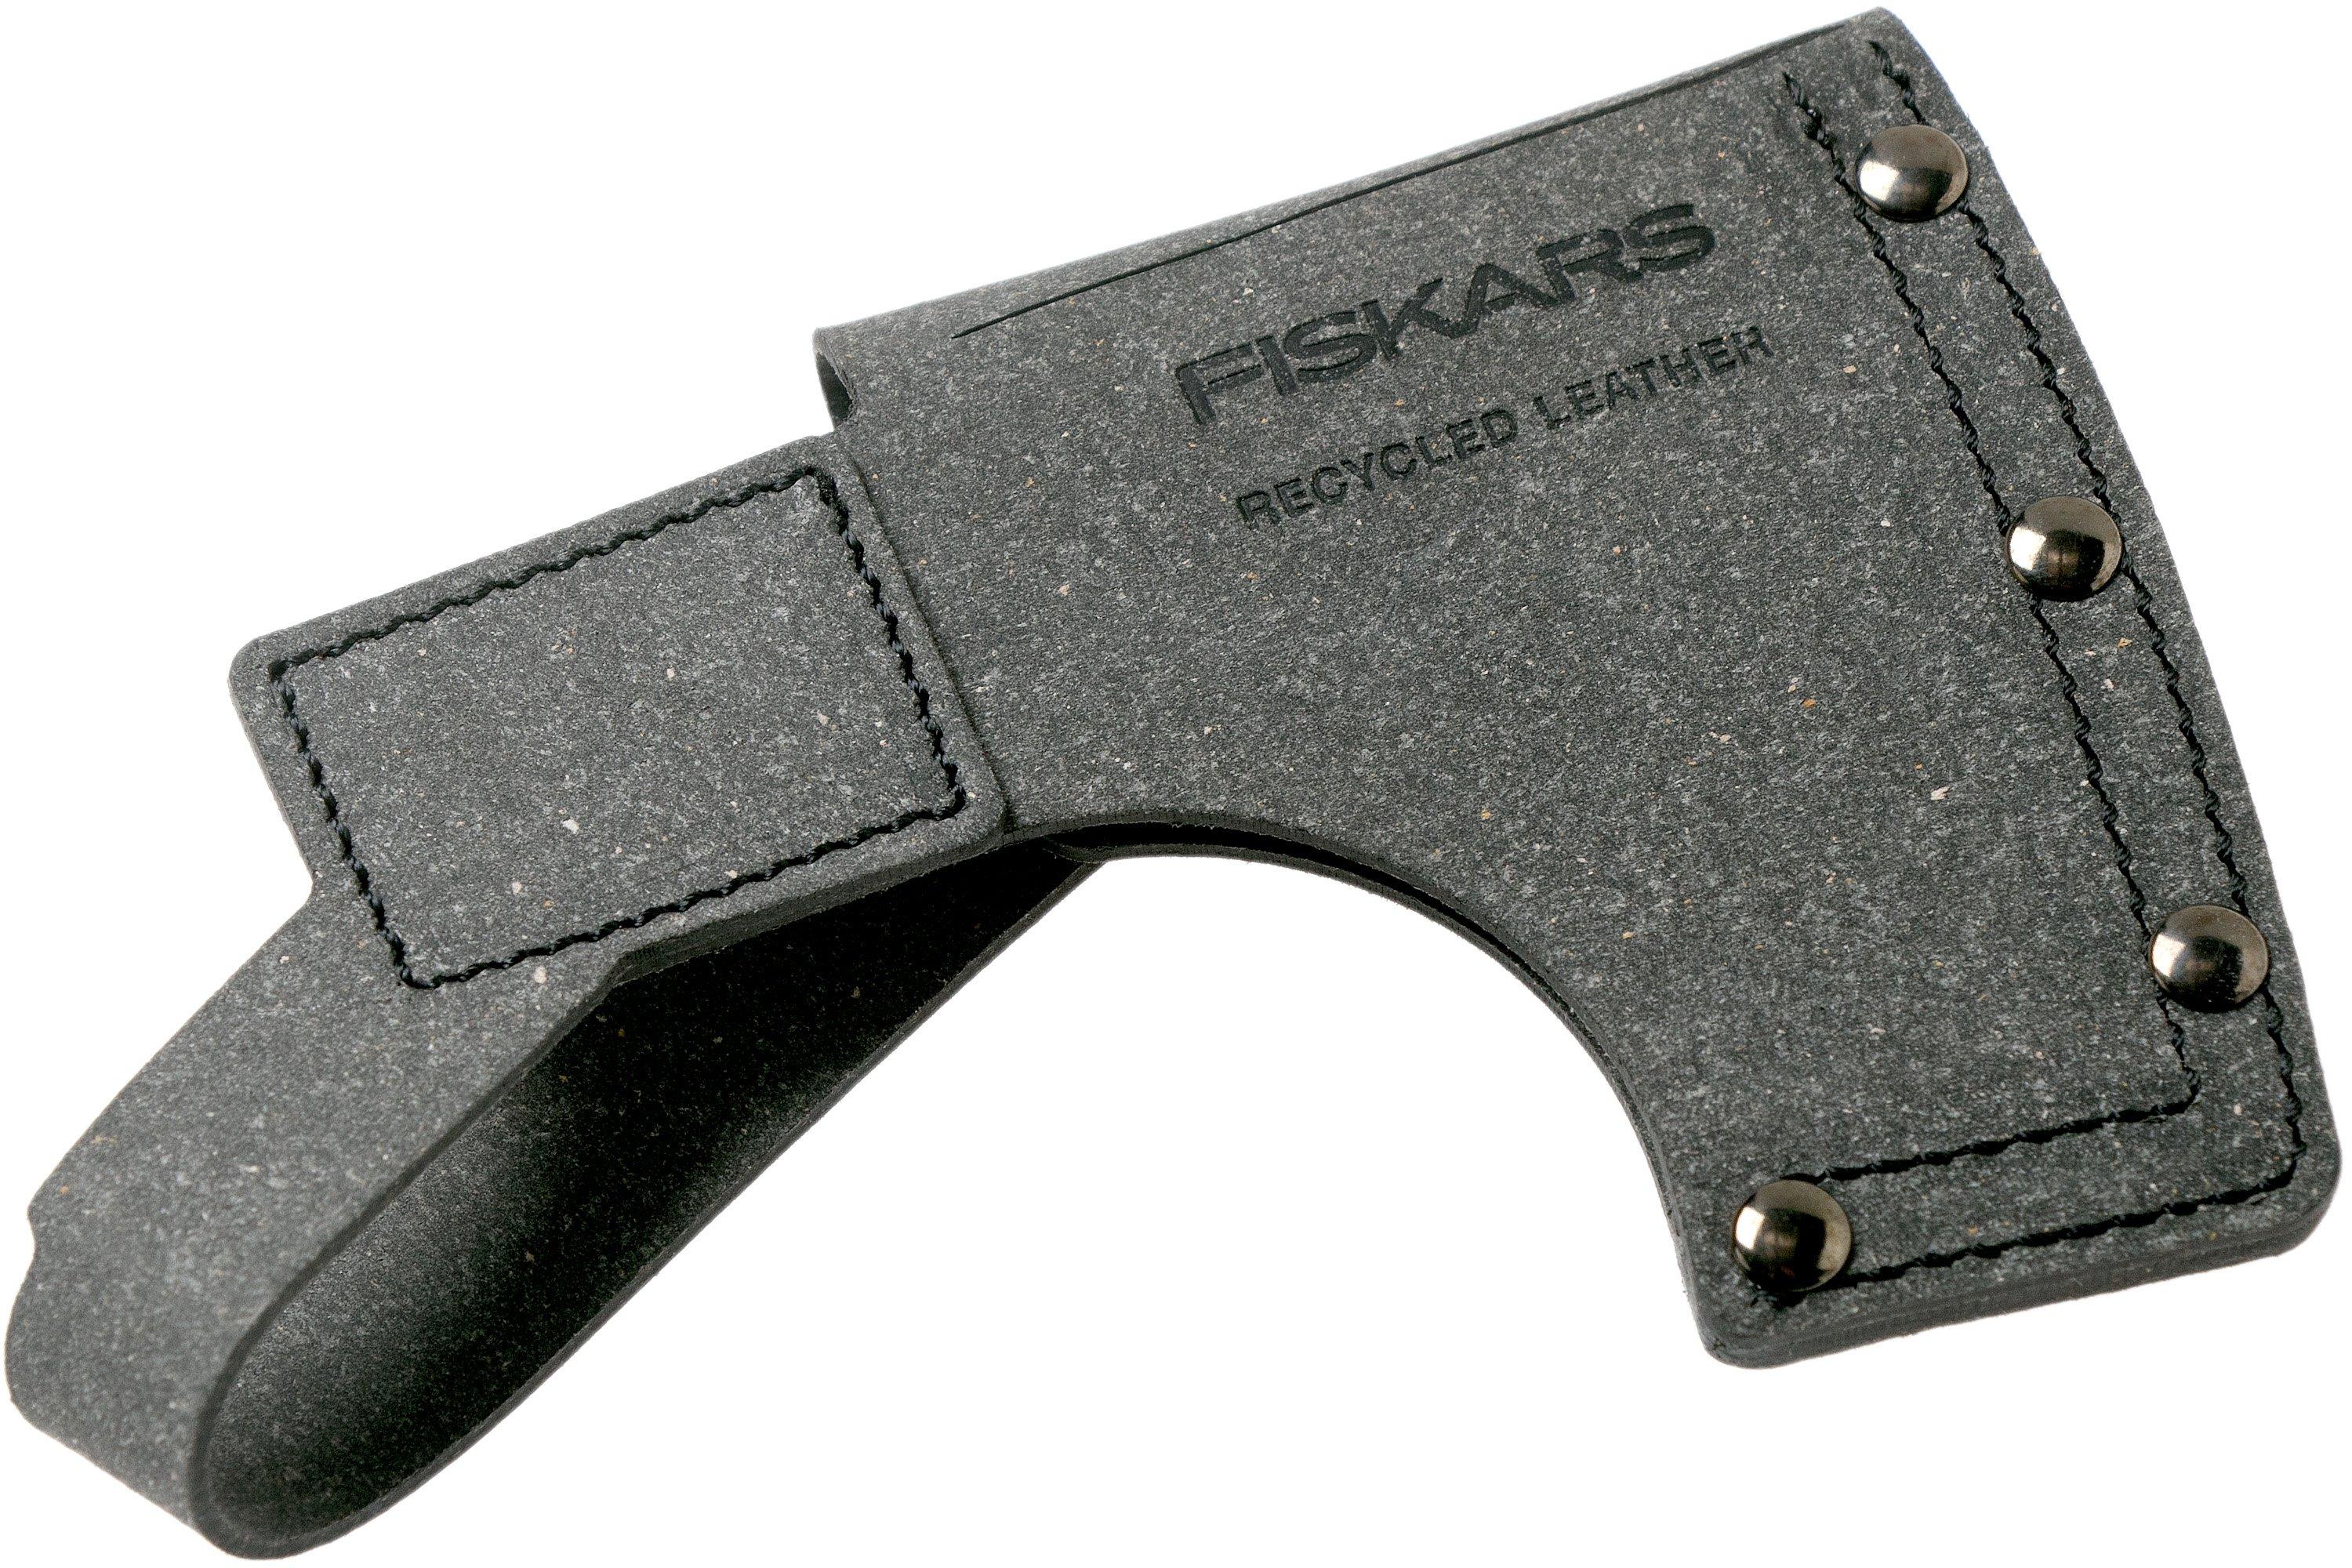 Fiskars X5 - Hacha, Comprar online